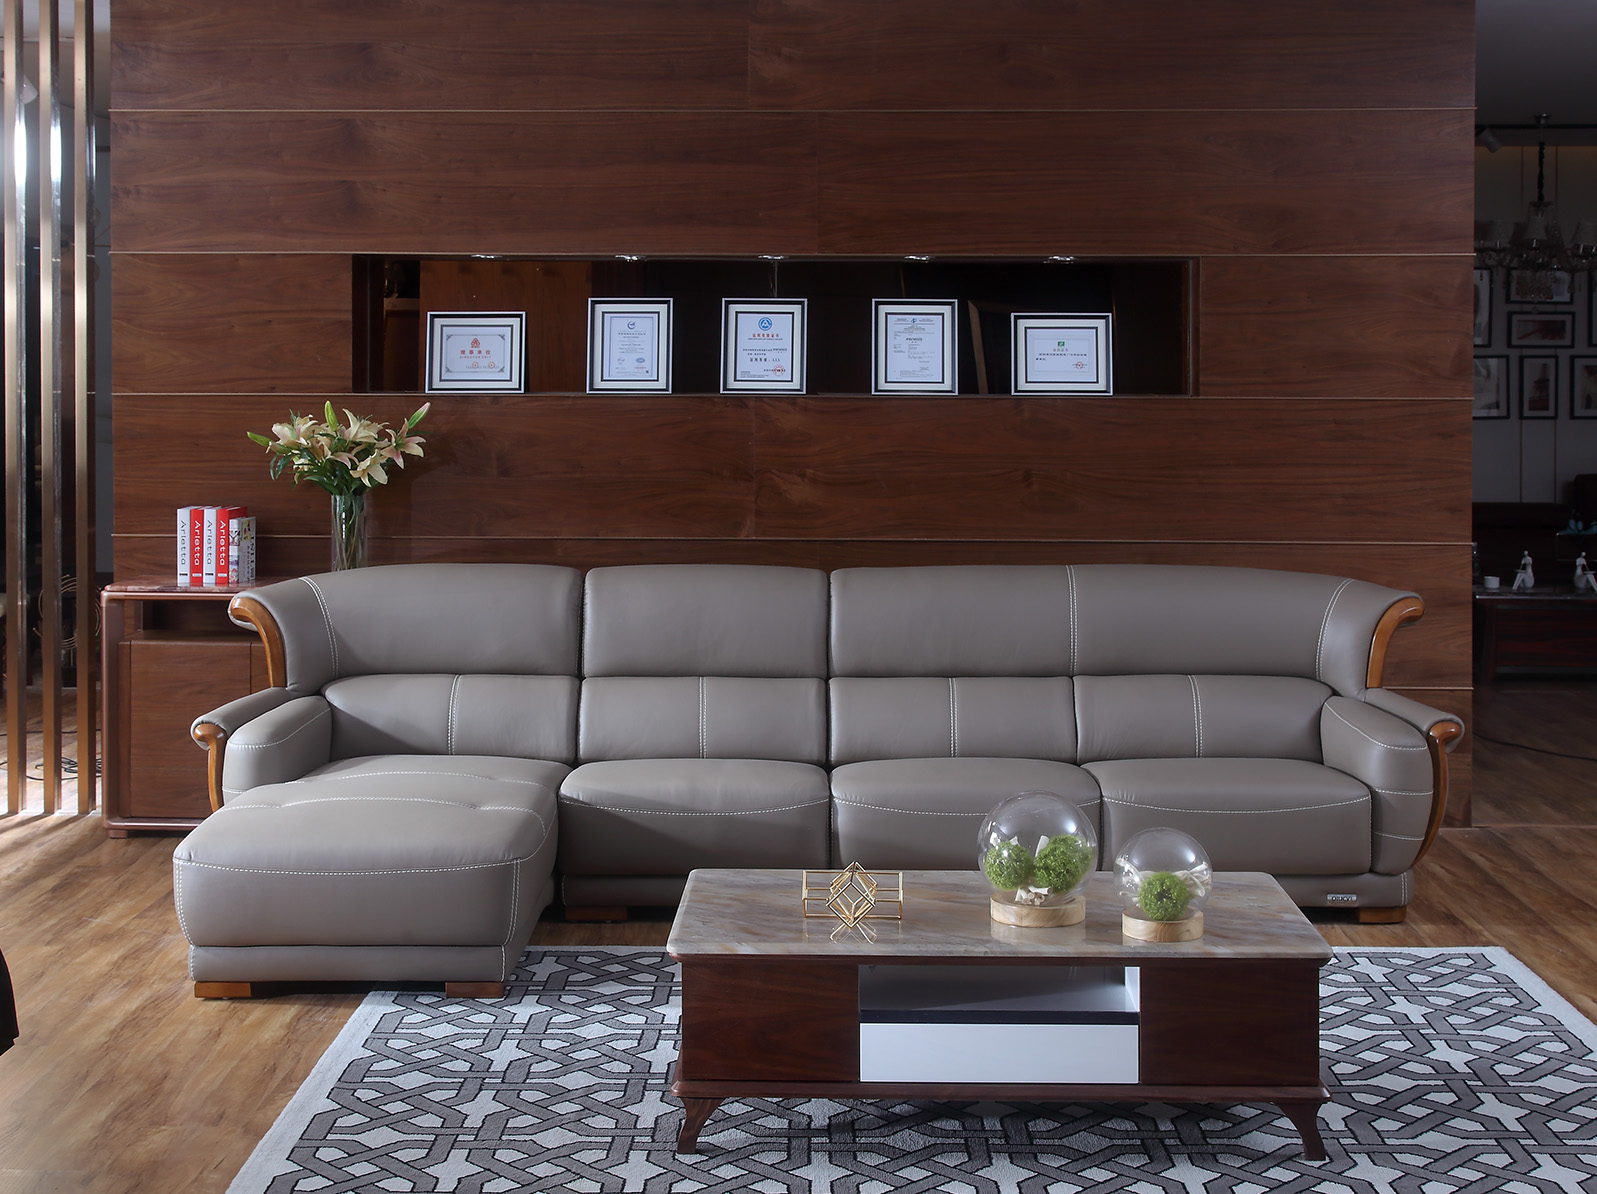 Fabric & leather sofa